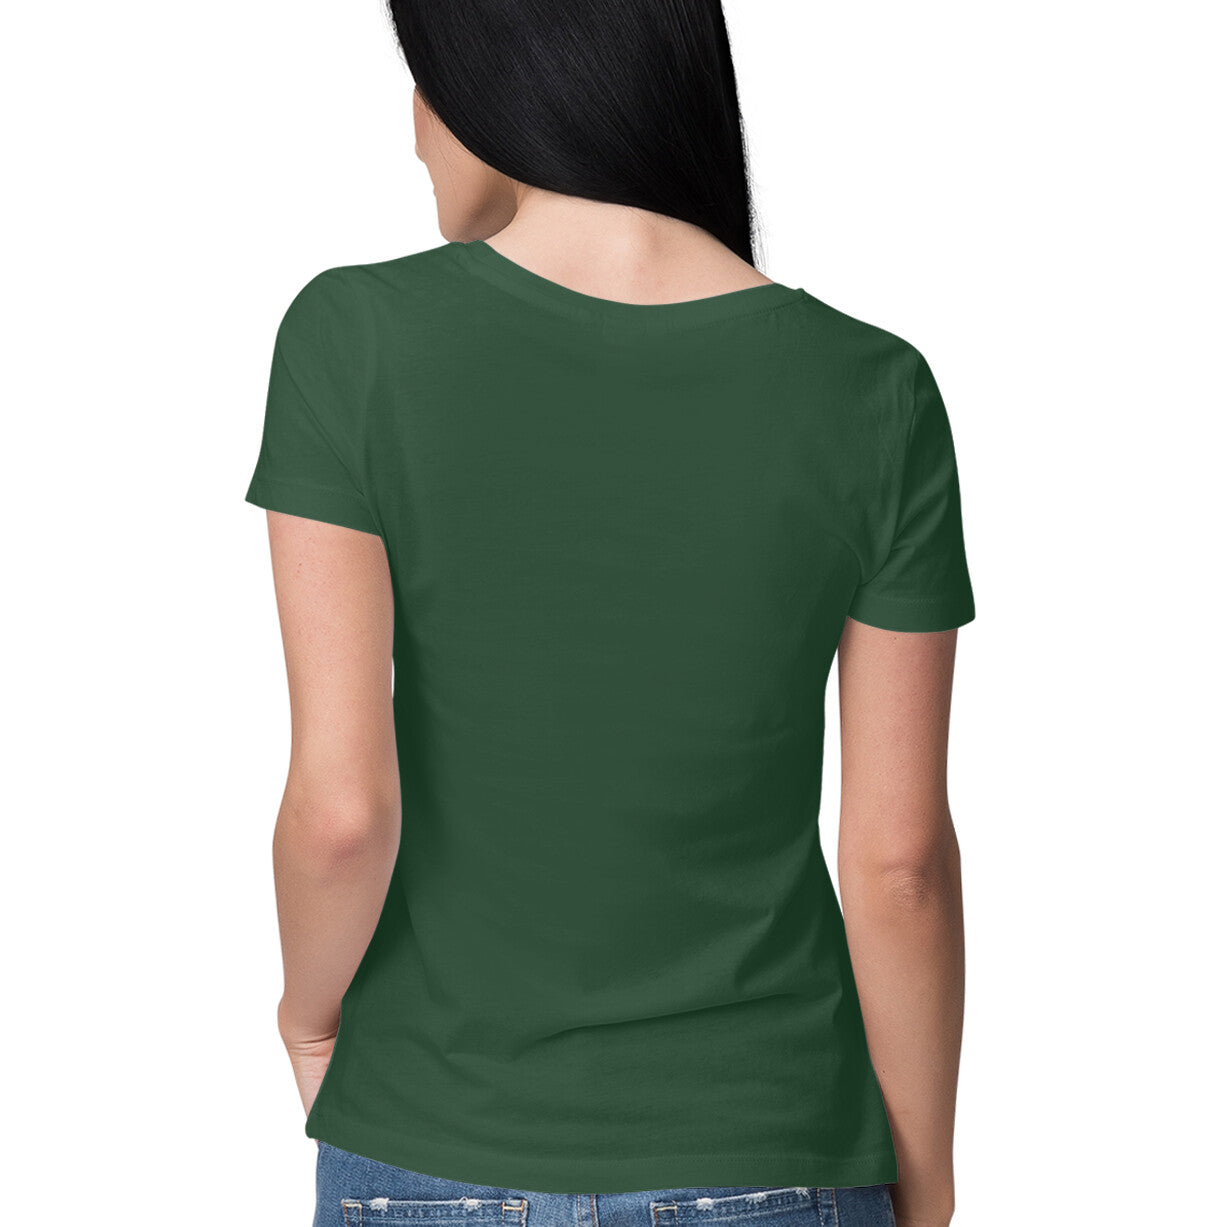 Emerald green - Born to play - Sleek Design T-shirt - Women